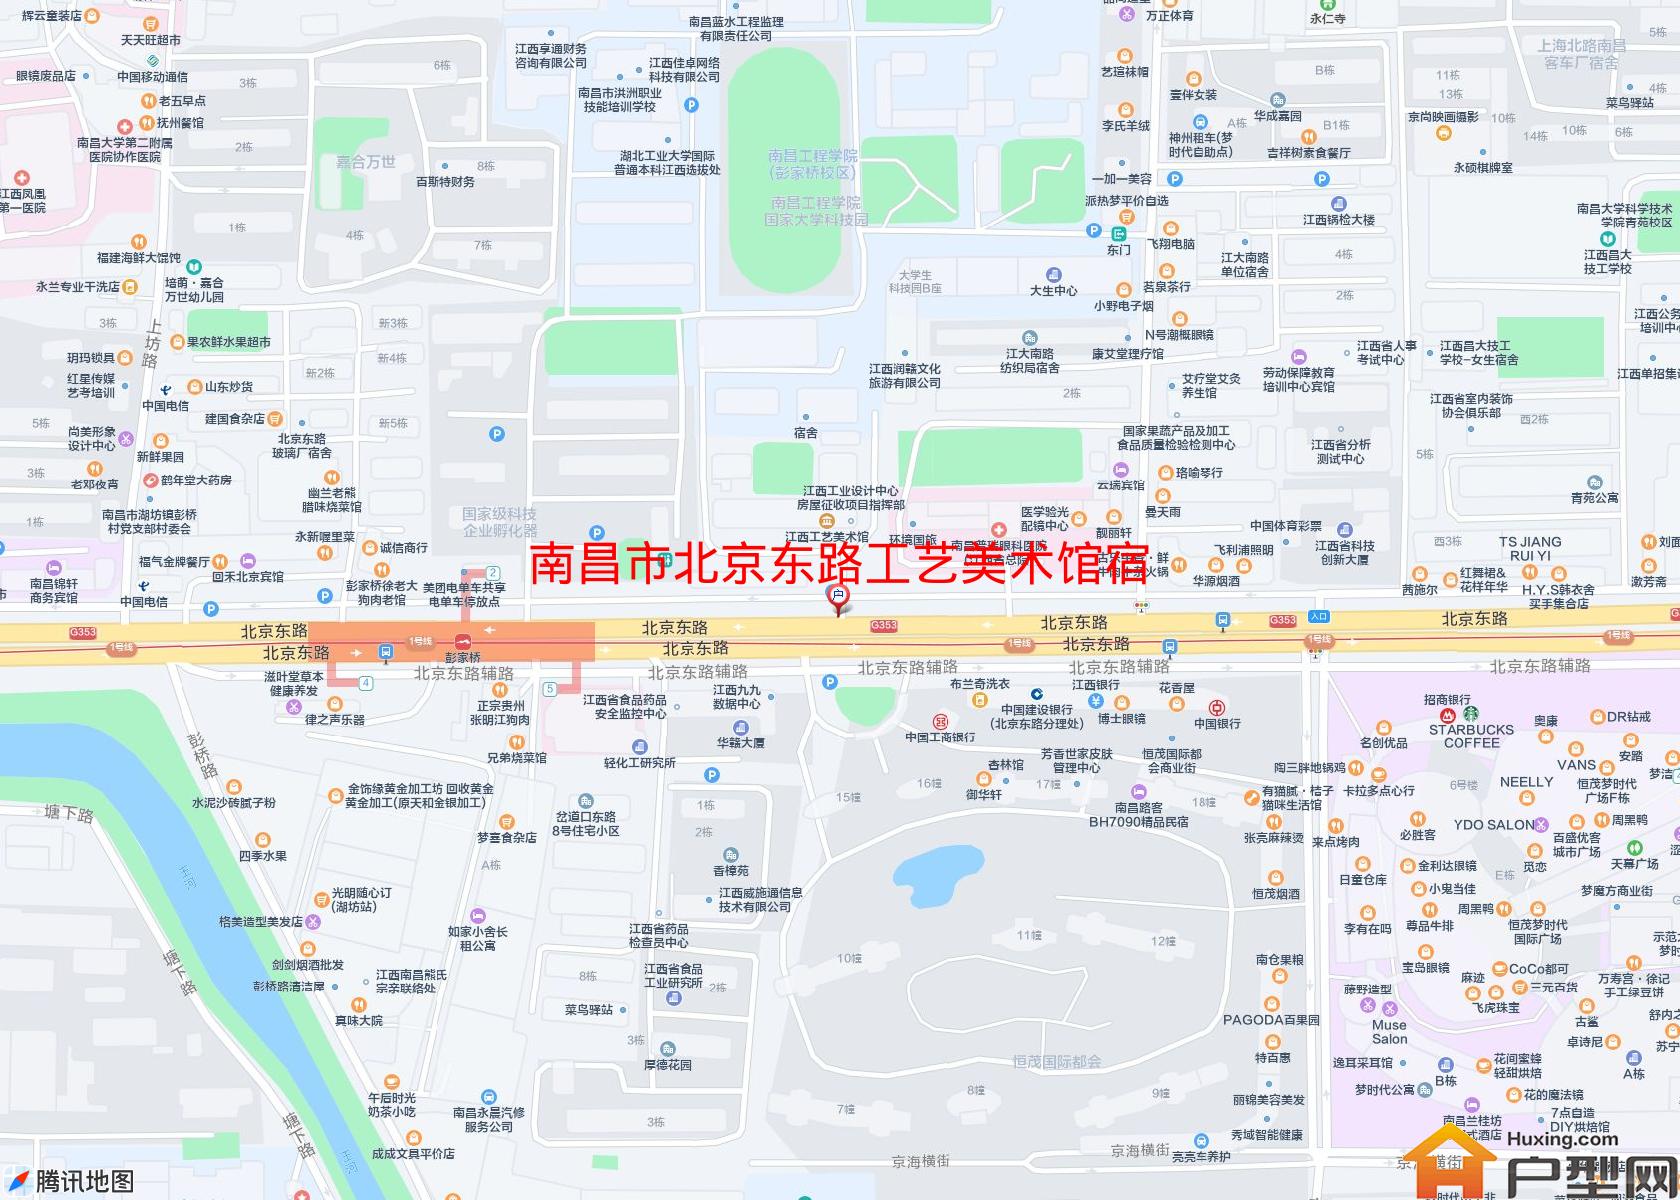 北京东路工艺美术馆宿舍小区 - 户型网